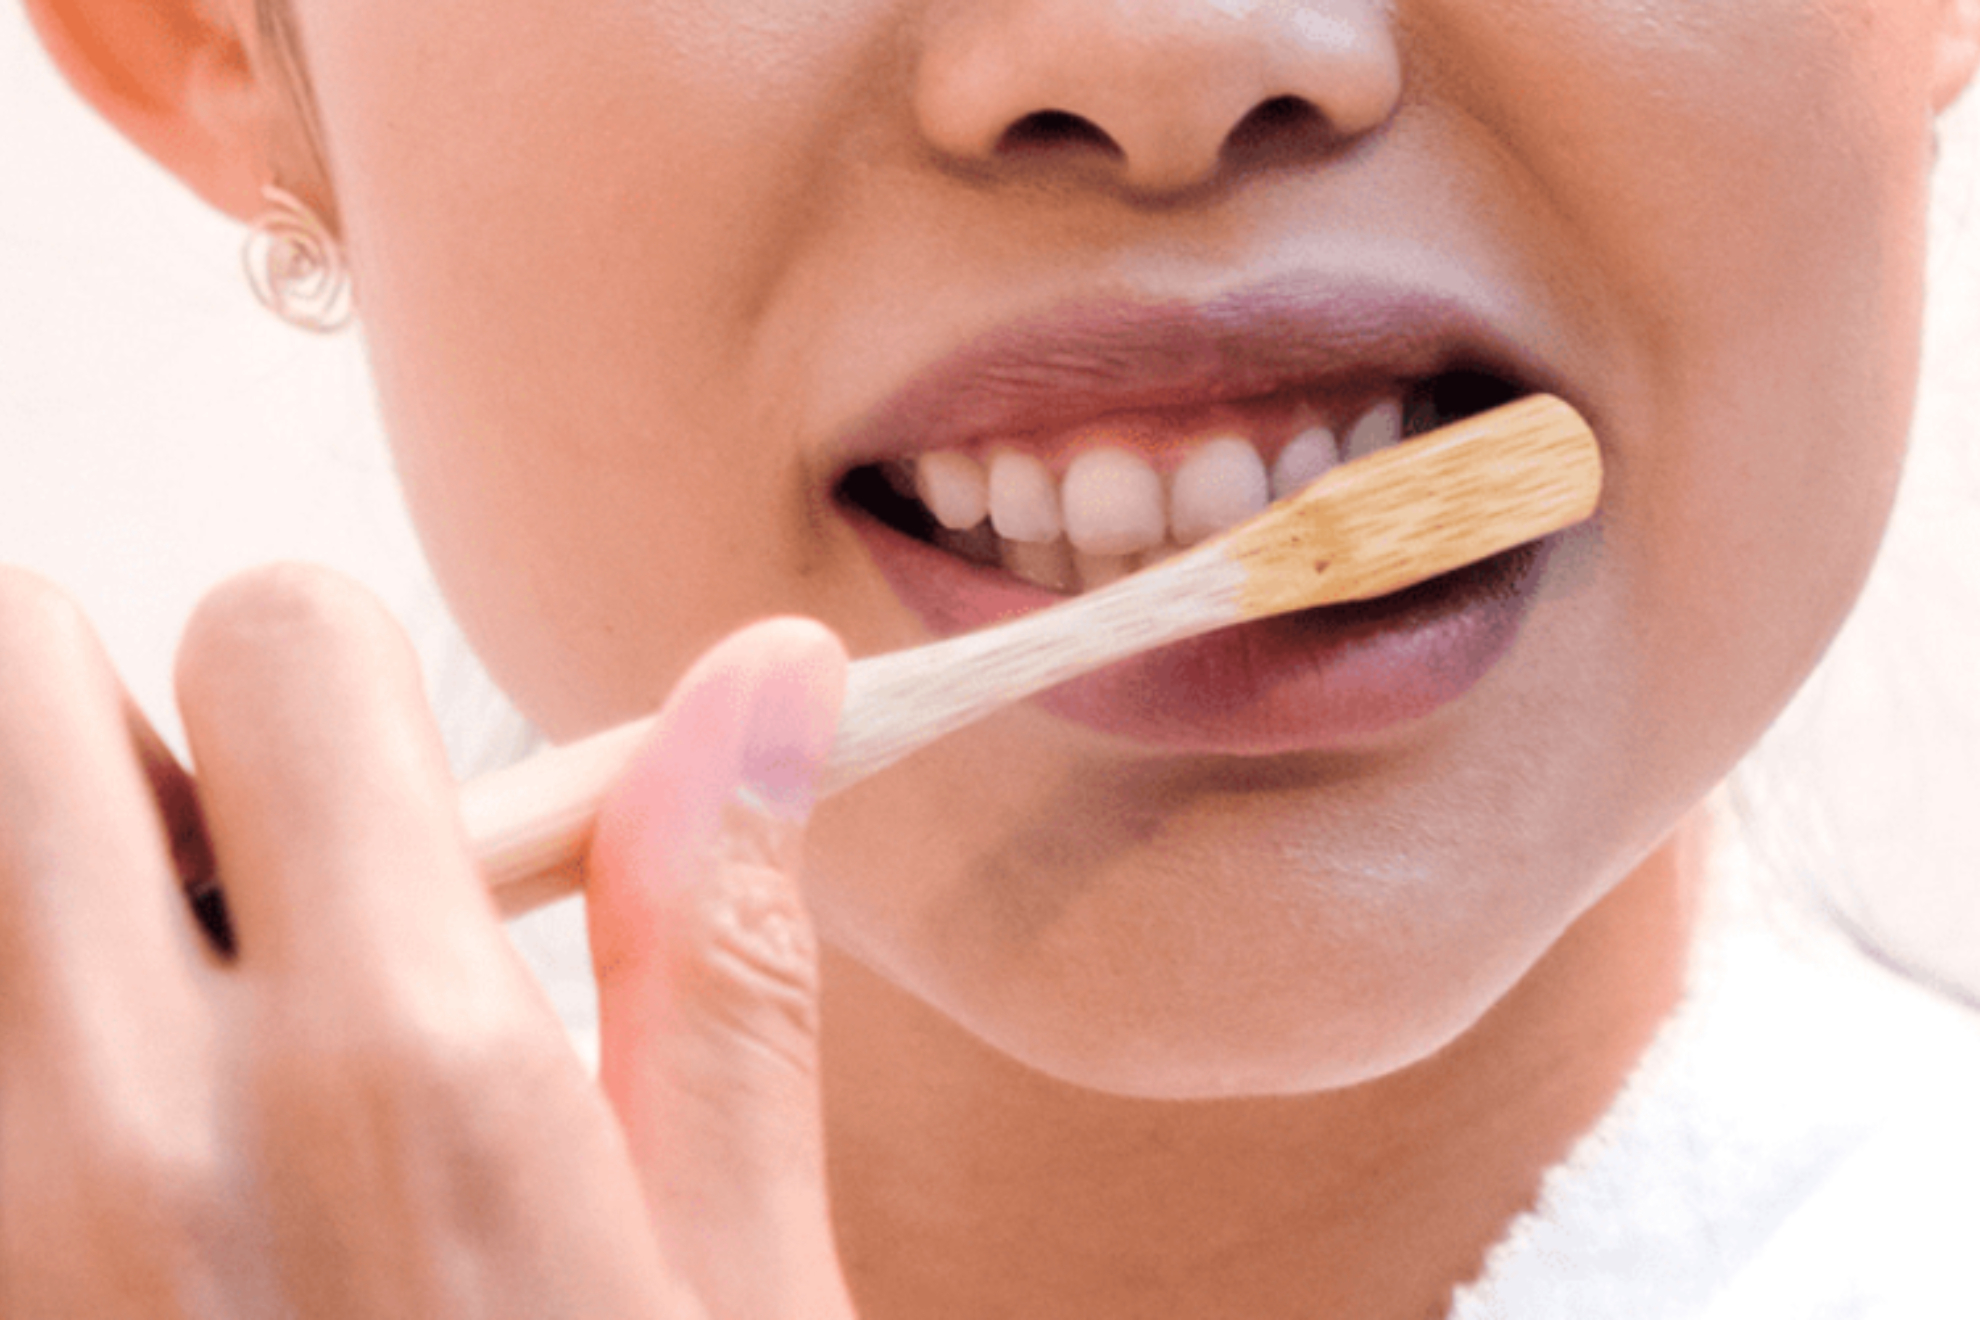 Da Mundial de la salud bucodental: 7 consejos para cepillarte los dientes de forma correcta